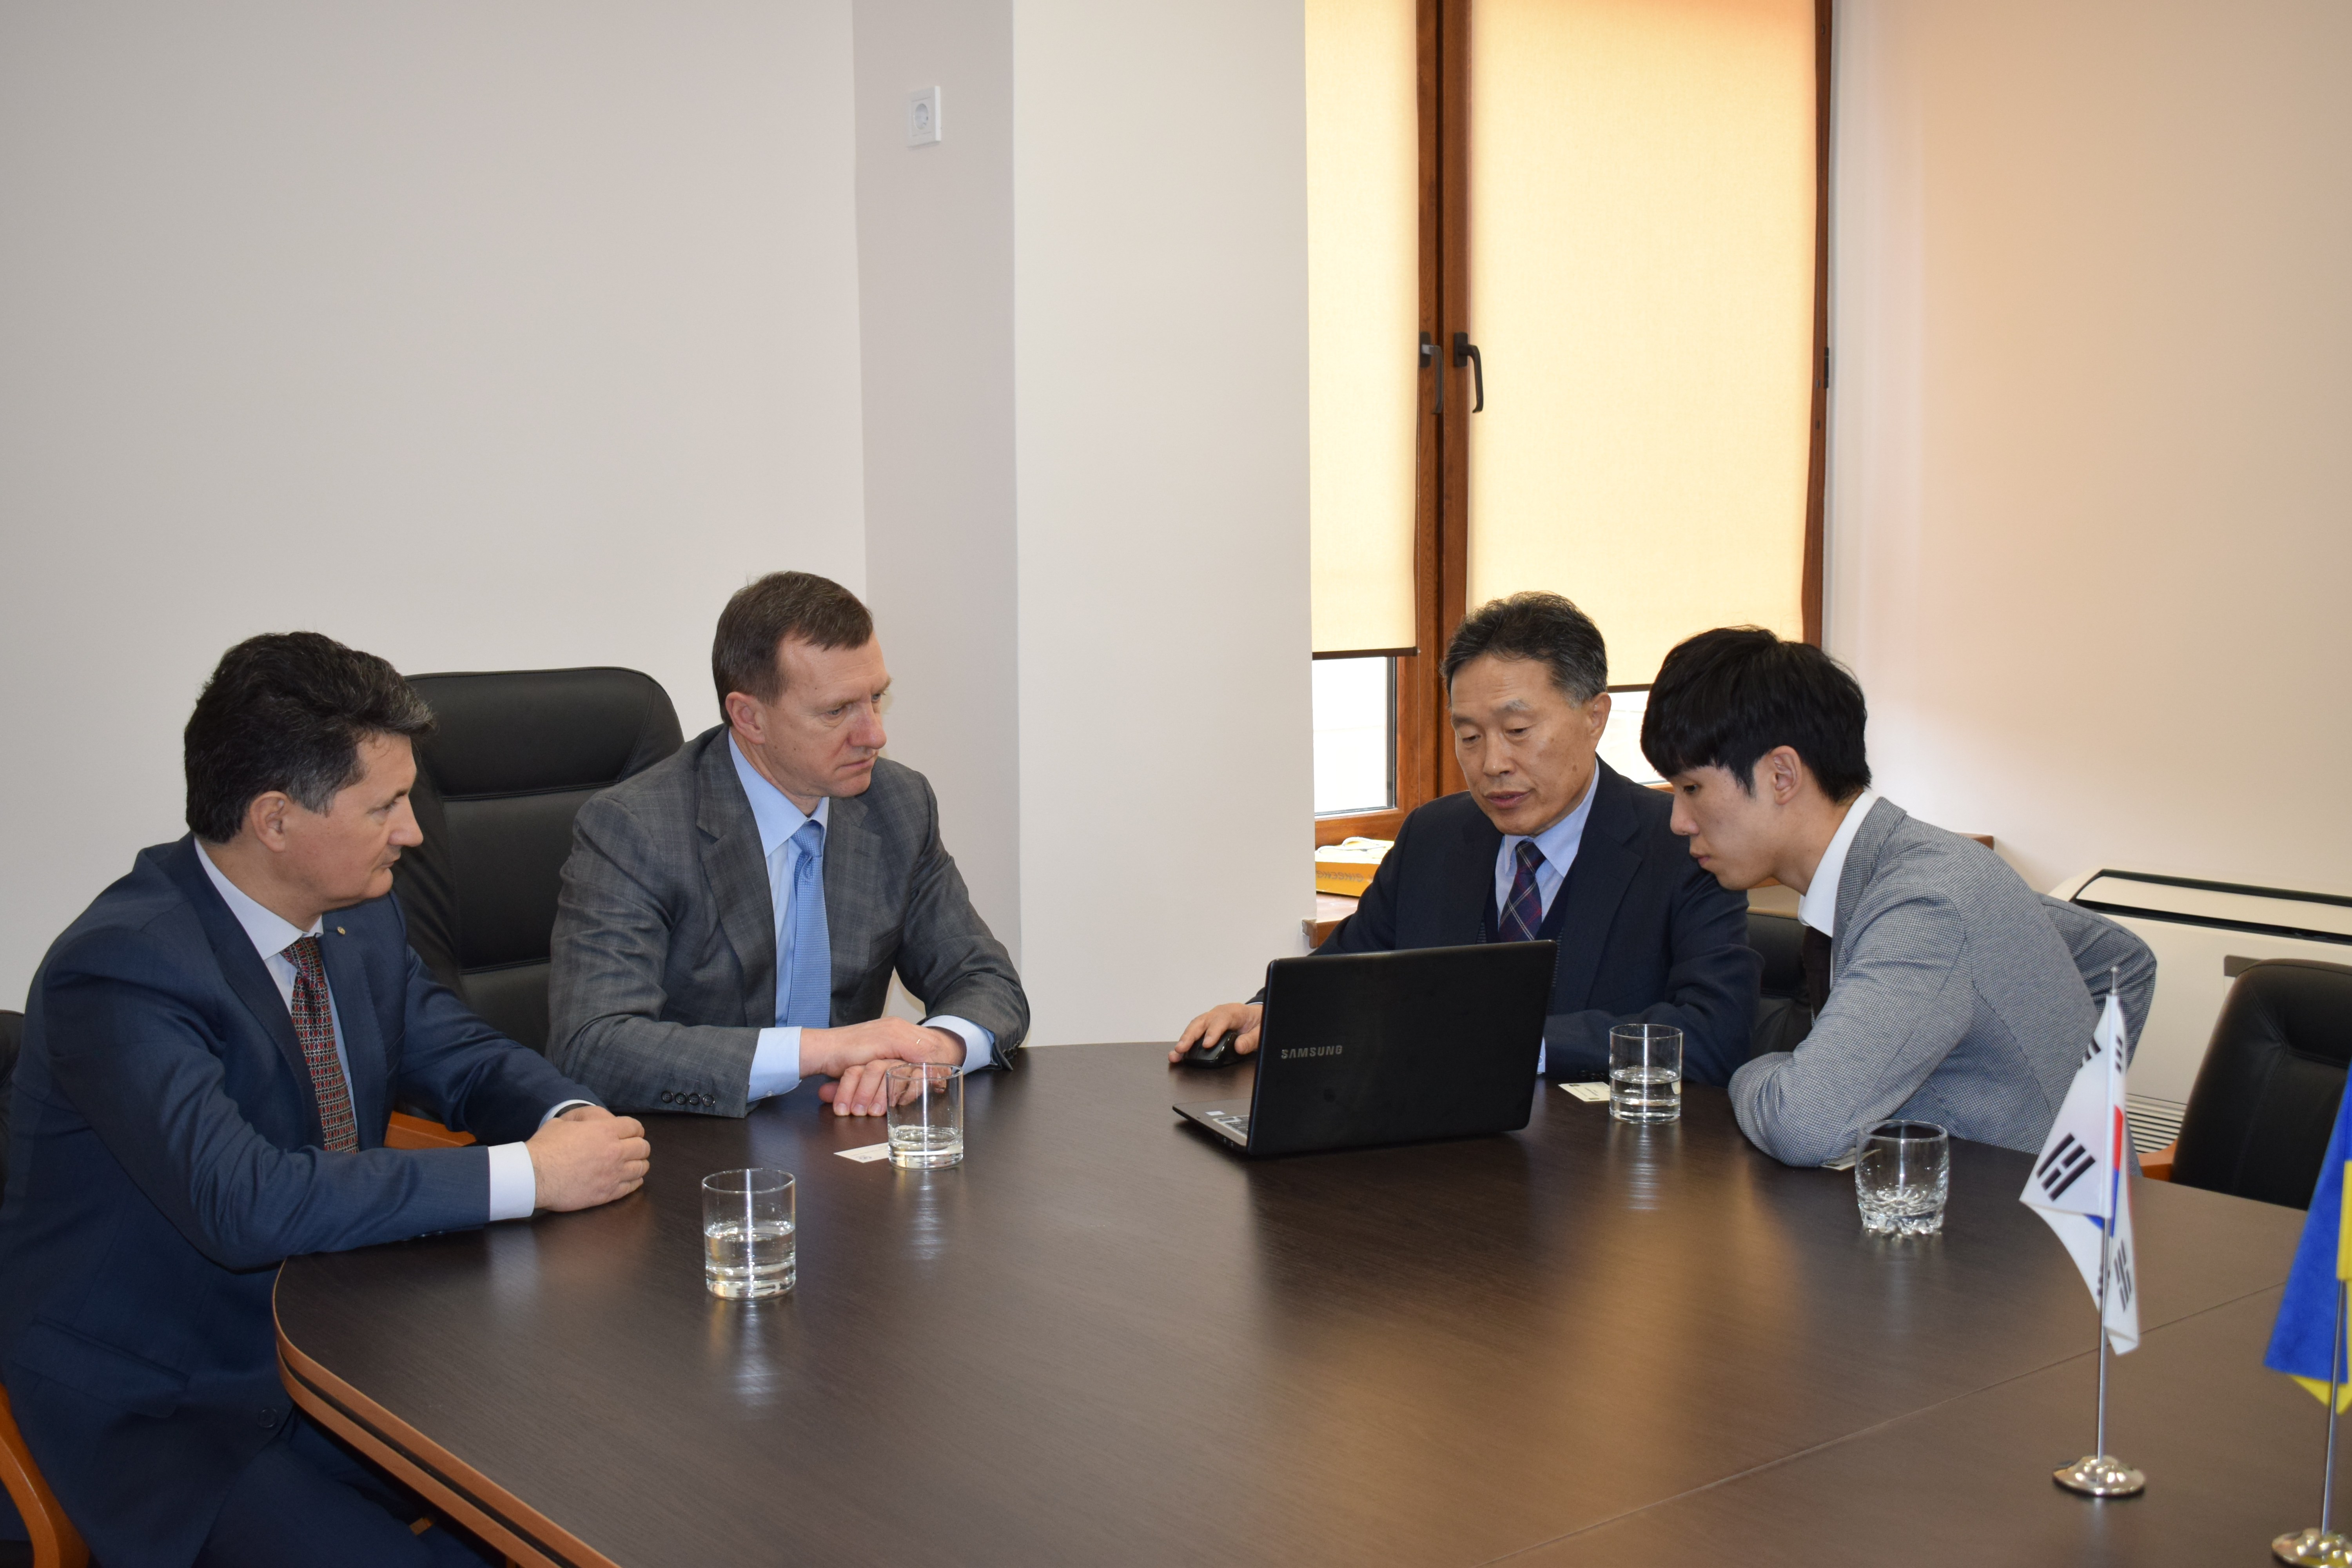 Міський голова Ужгорода Богдан Андріїв зустрівся з групою науковців із Південної Кореї